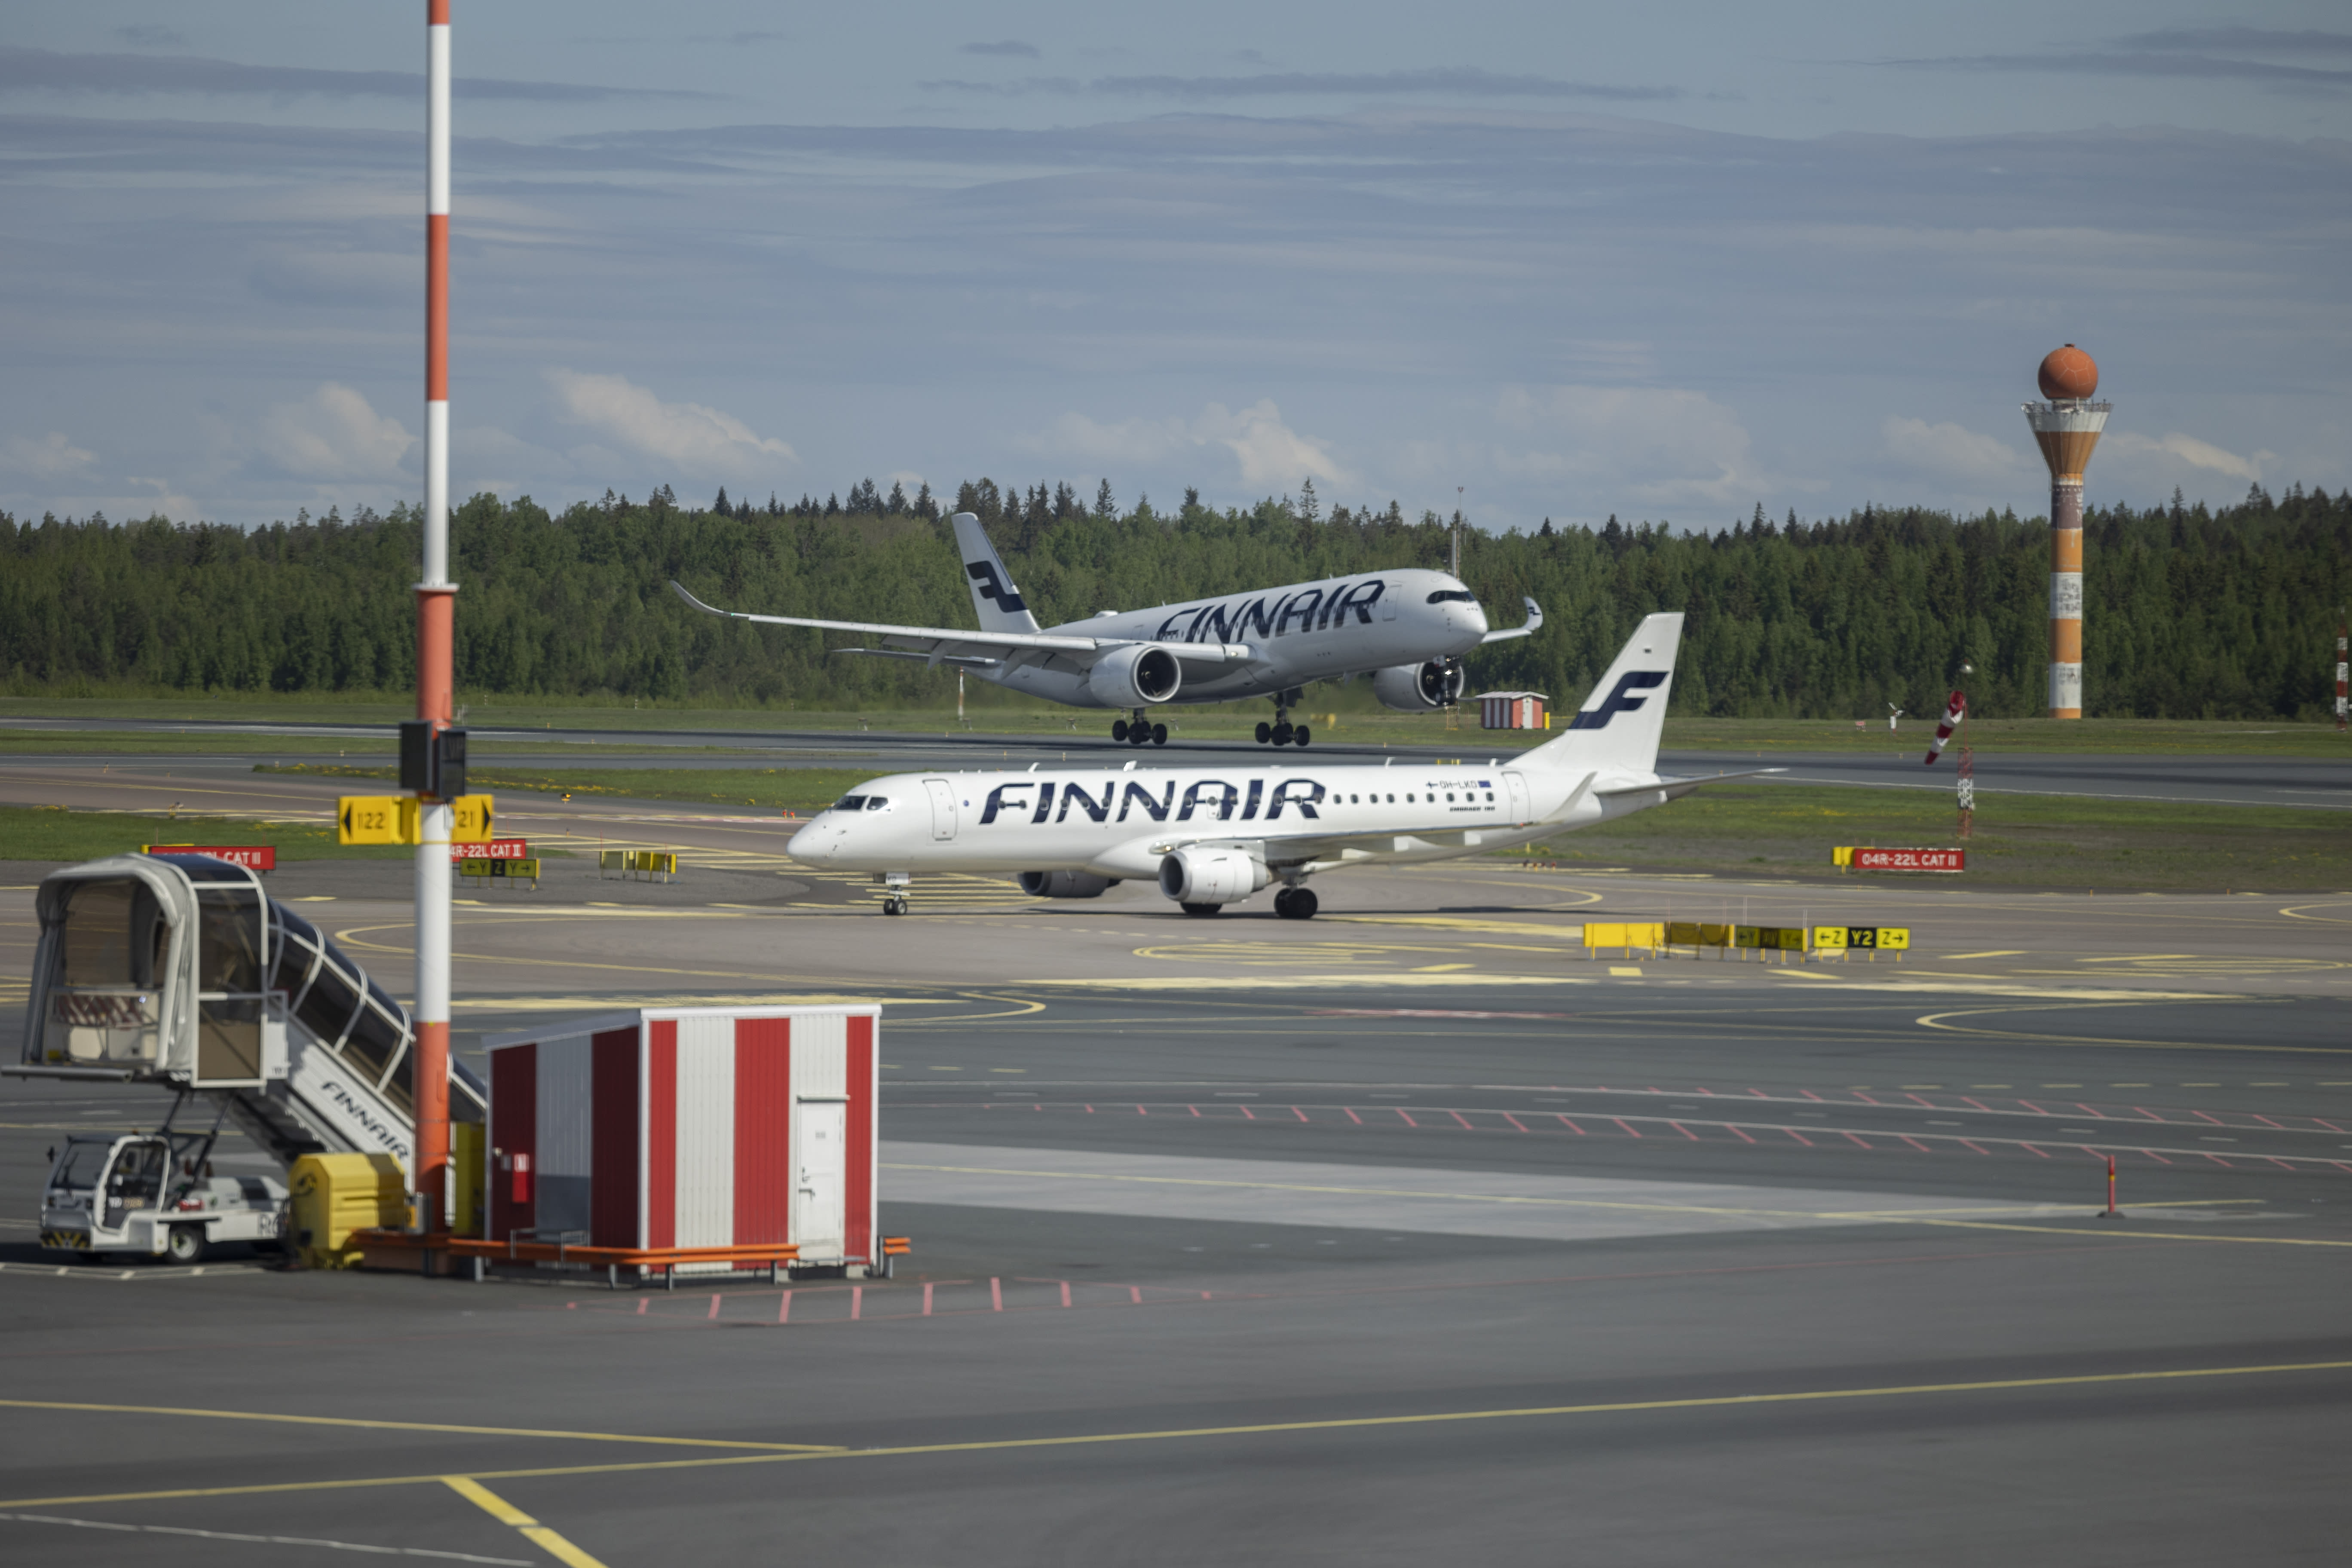 Finnair is canceling around 100 flights